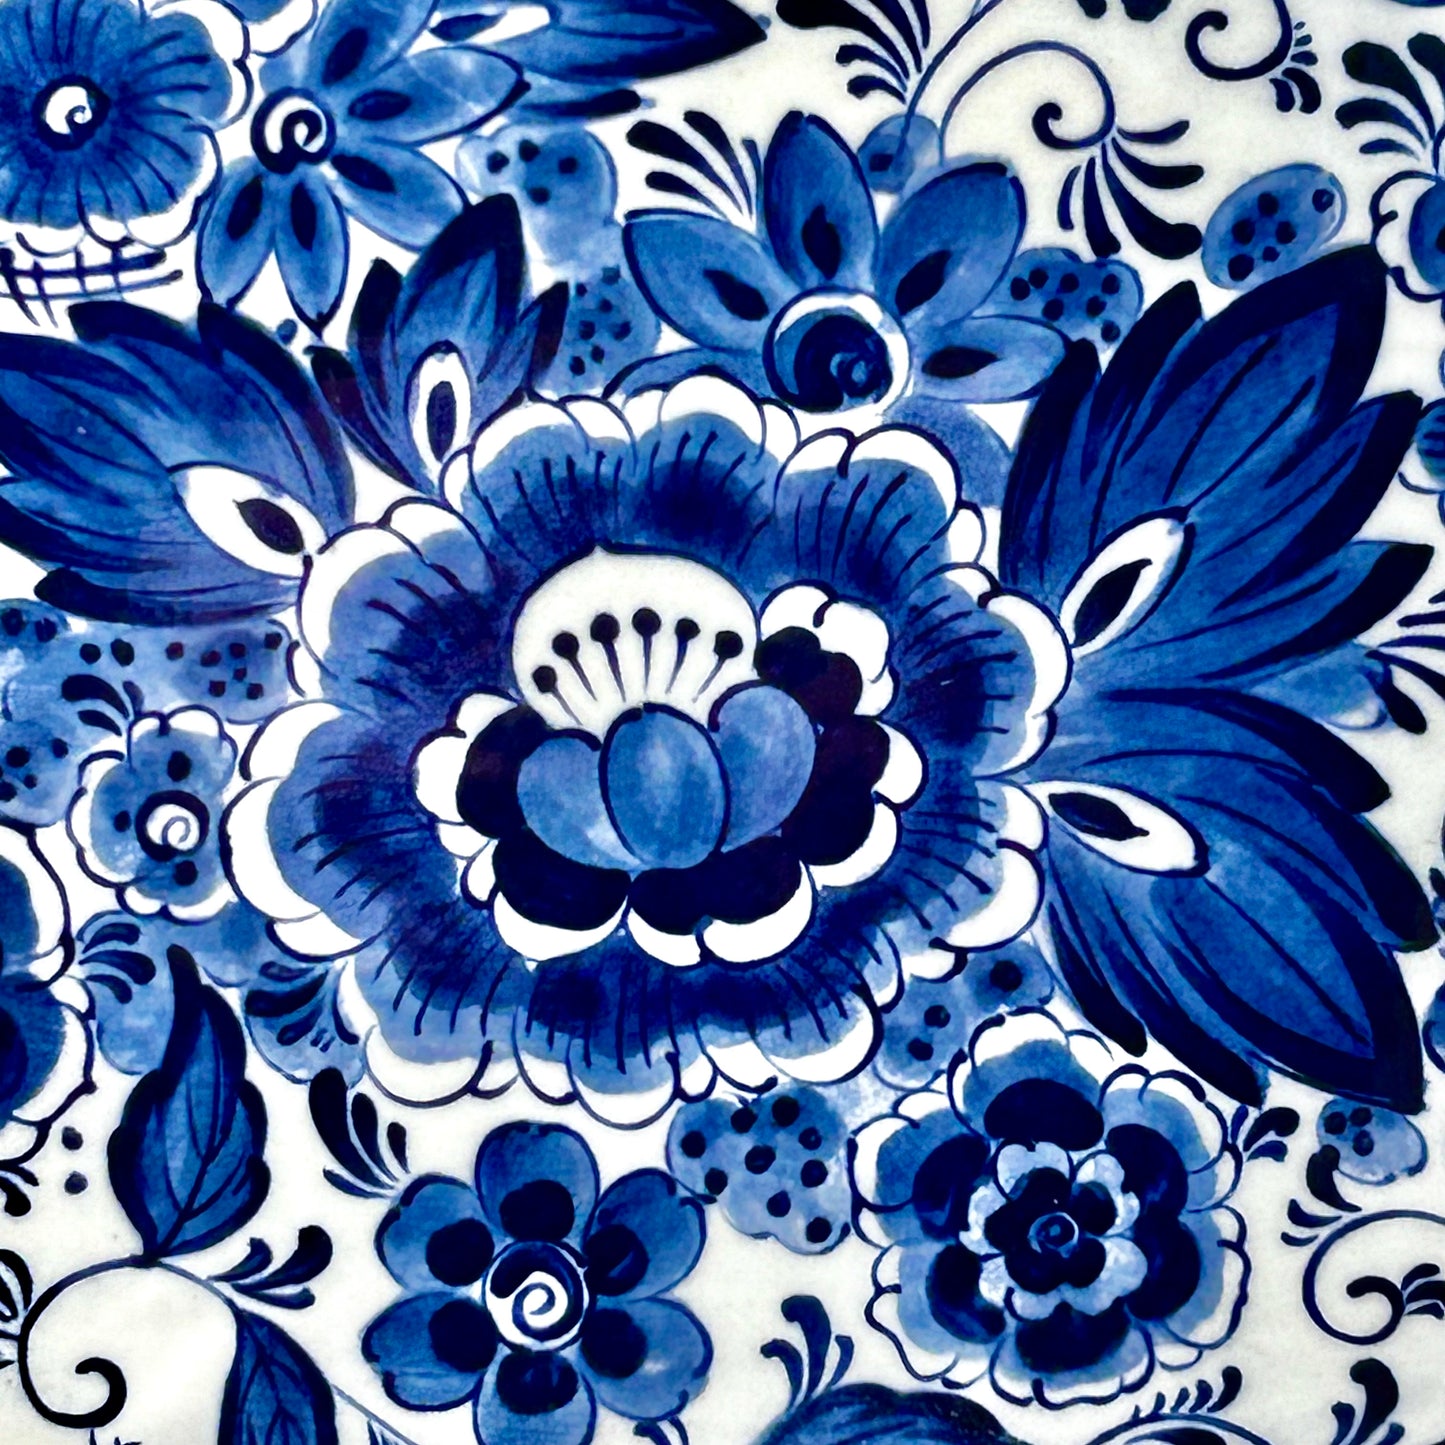 Vintage blue & white chinoiserie extra large botanical platter, 18.5 x 14